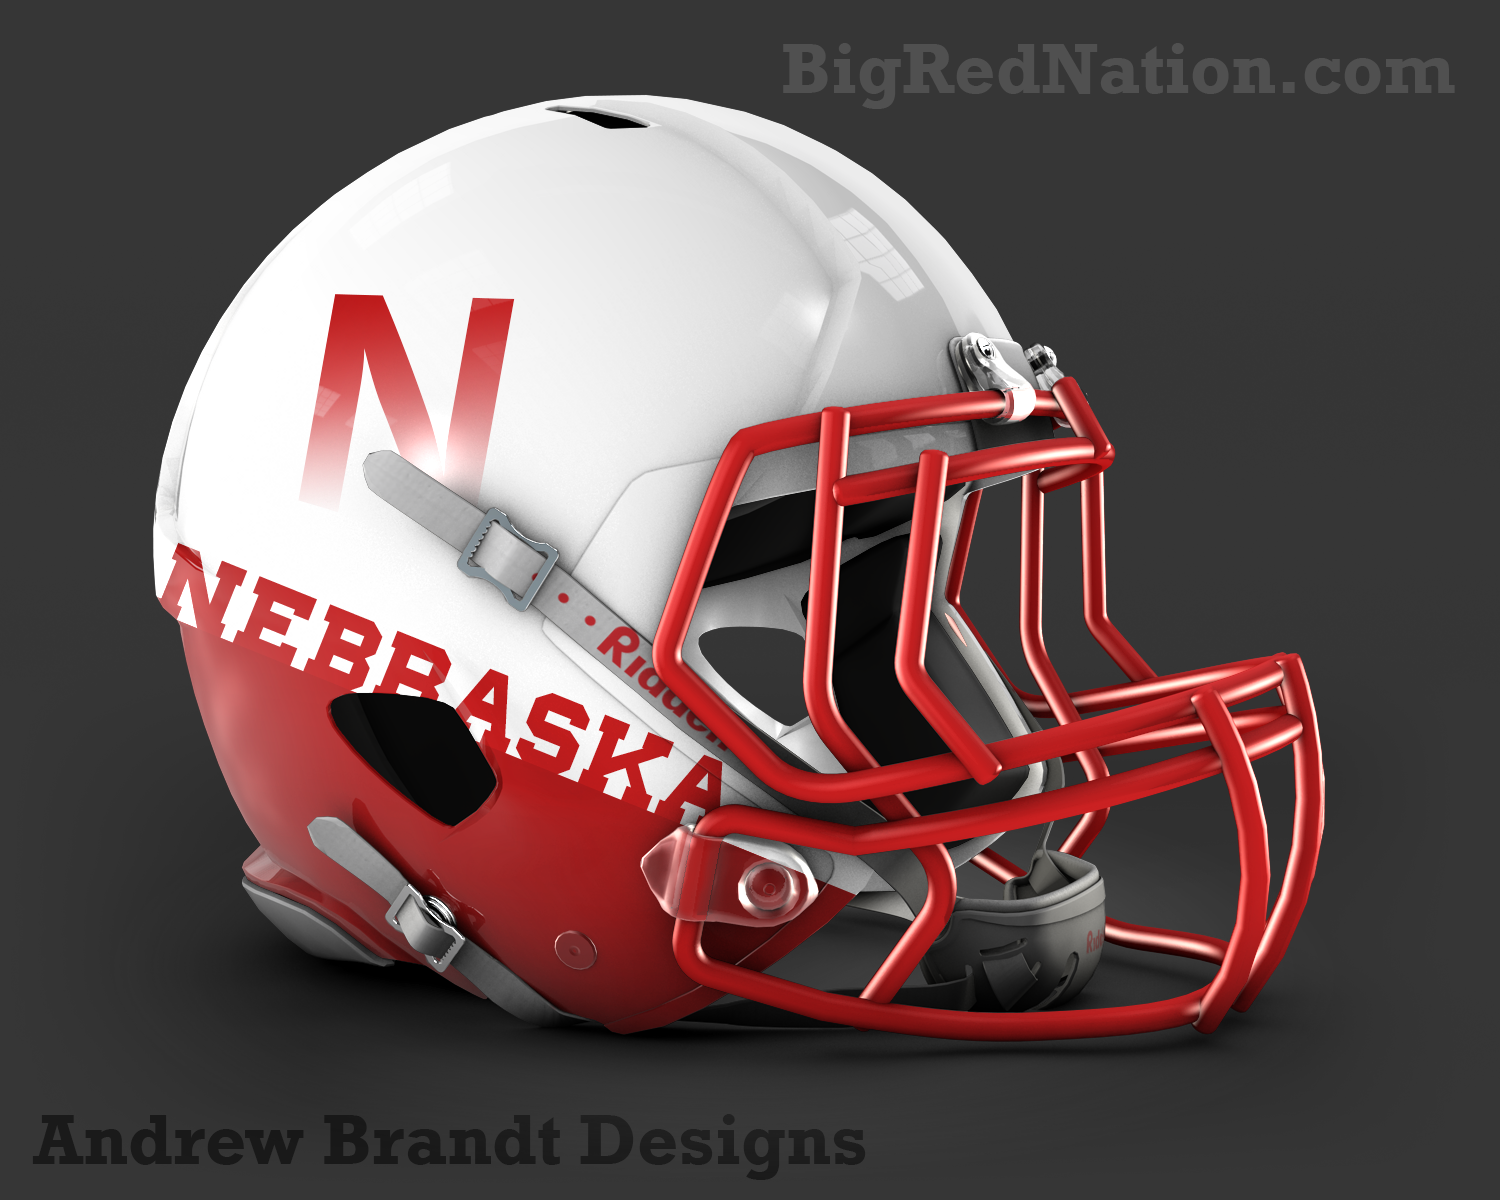 Andrew Brandt S Design Of Nebraska On The Horizon Line Helmet